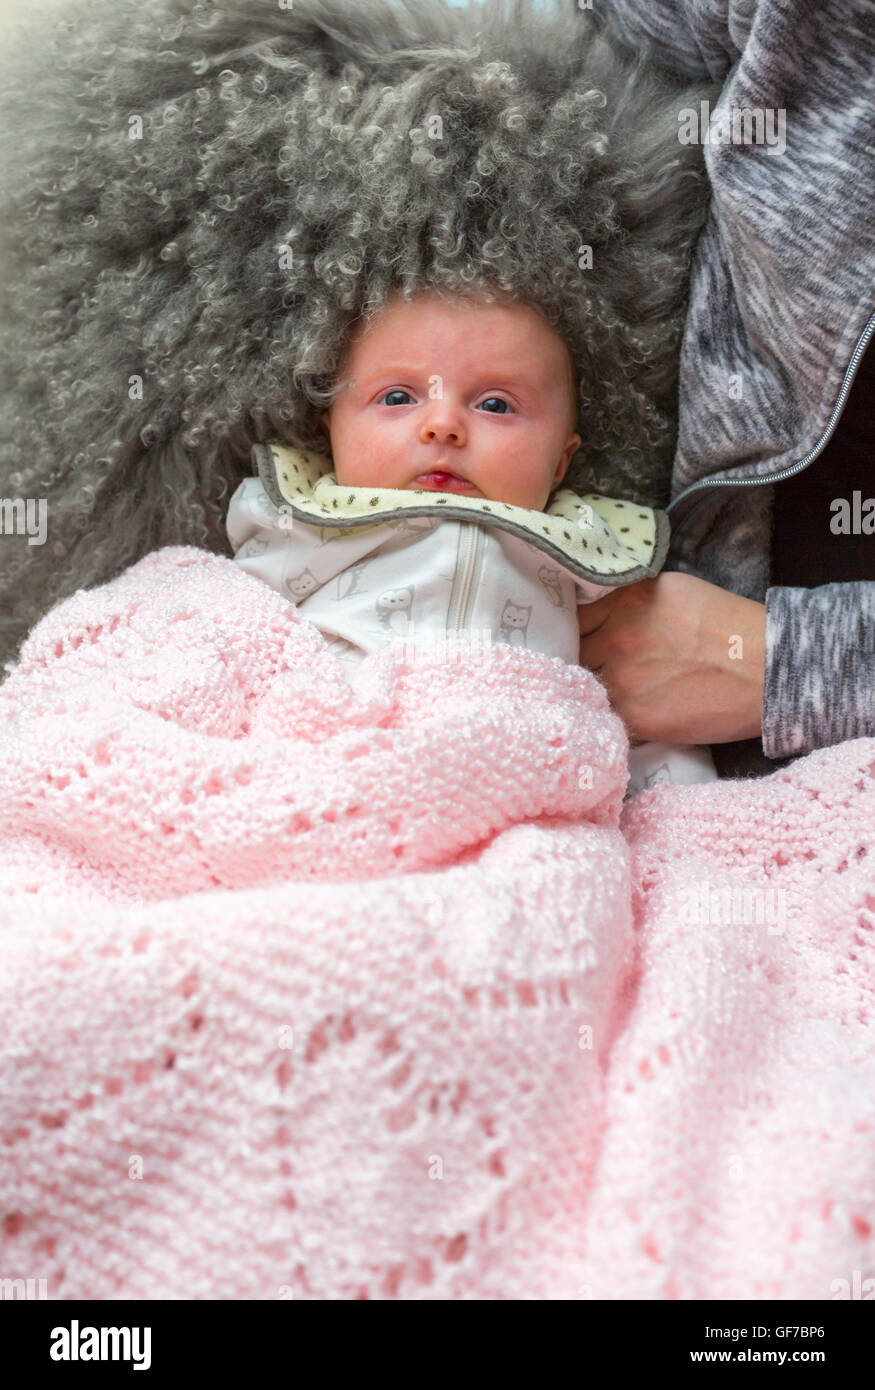 Un nourrisson de 2 mois avec tumeur bénigne, hémangiome sur sa lèvre Banque D'Images